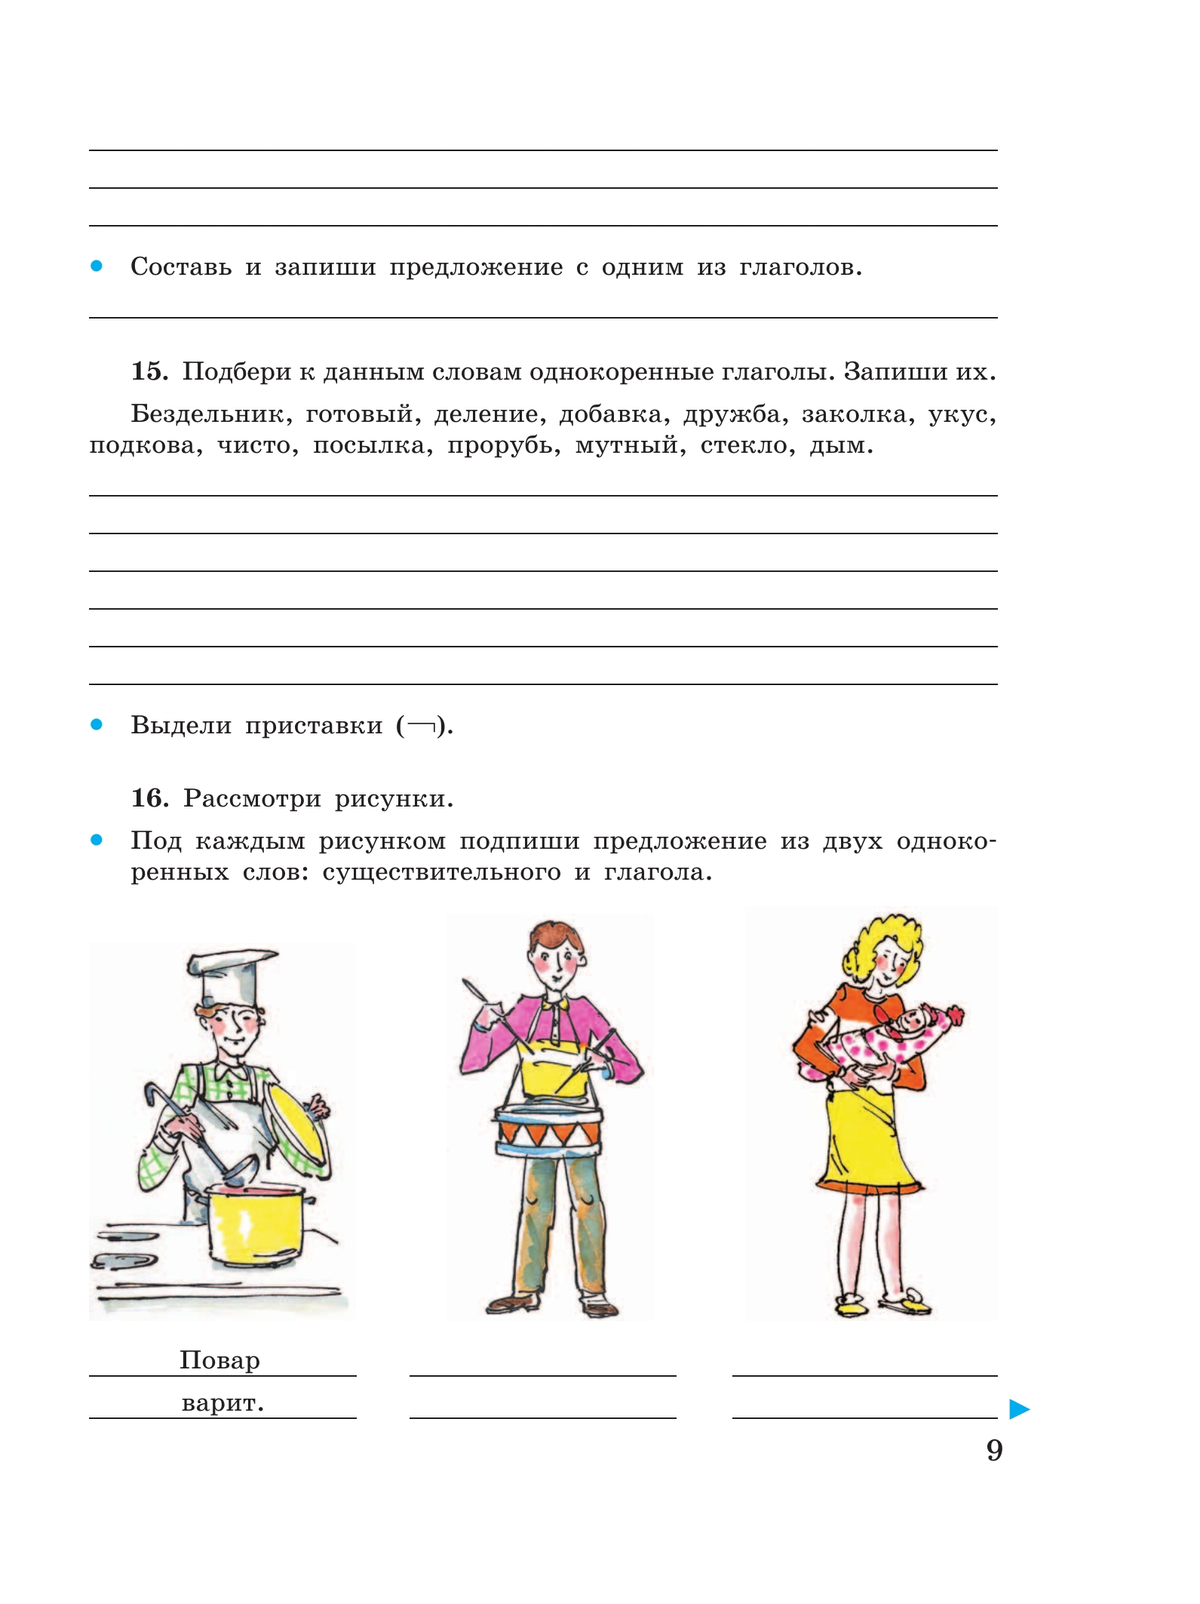 Русский язык. Глагол. 5-9 классы. Рабочая тетрадь 4 (для обучающихся с интеллектуальными нарушениями) 9